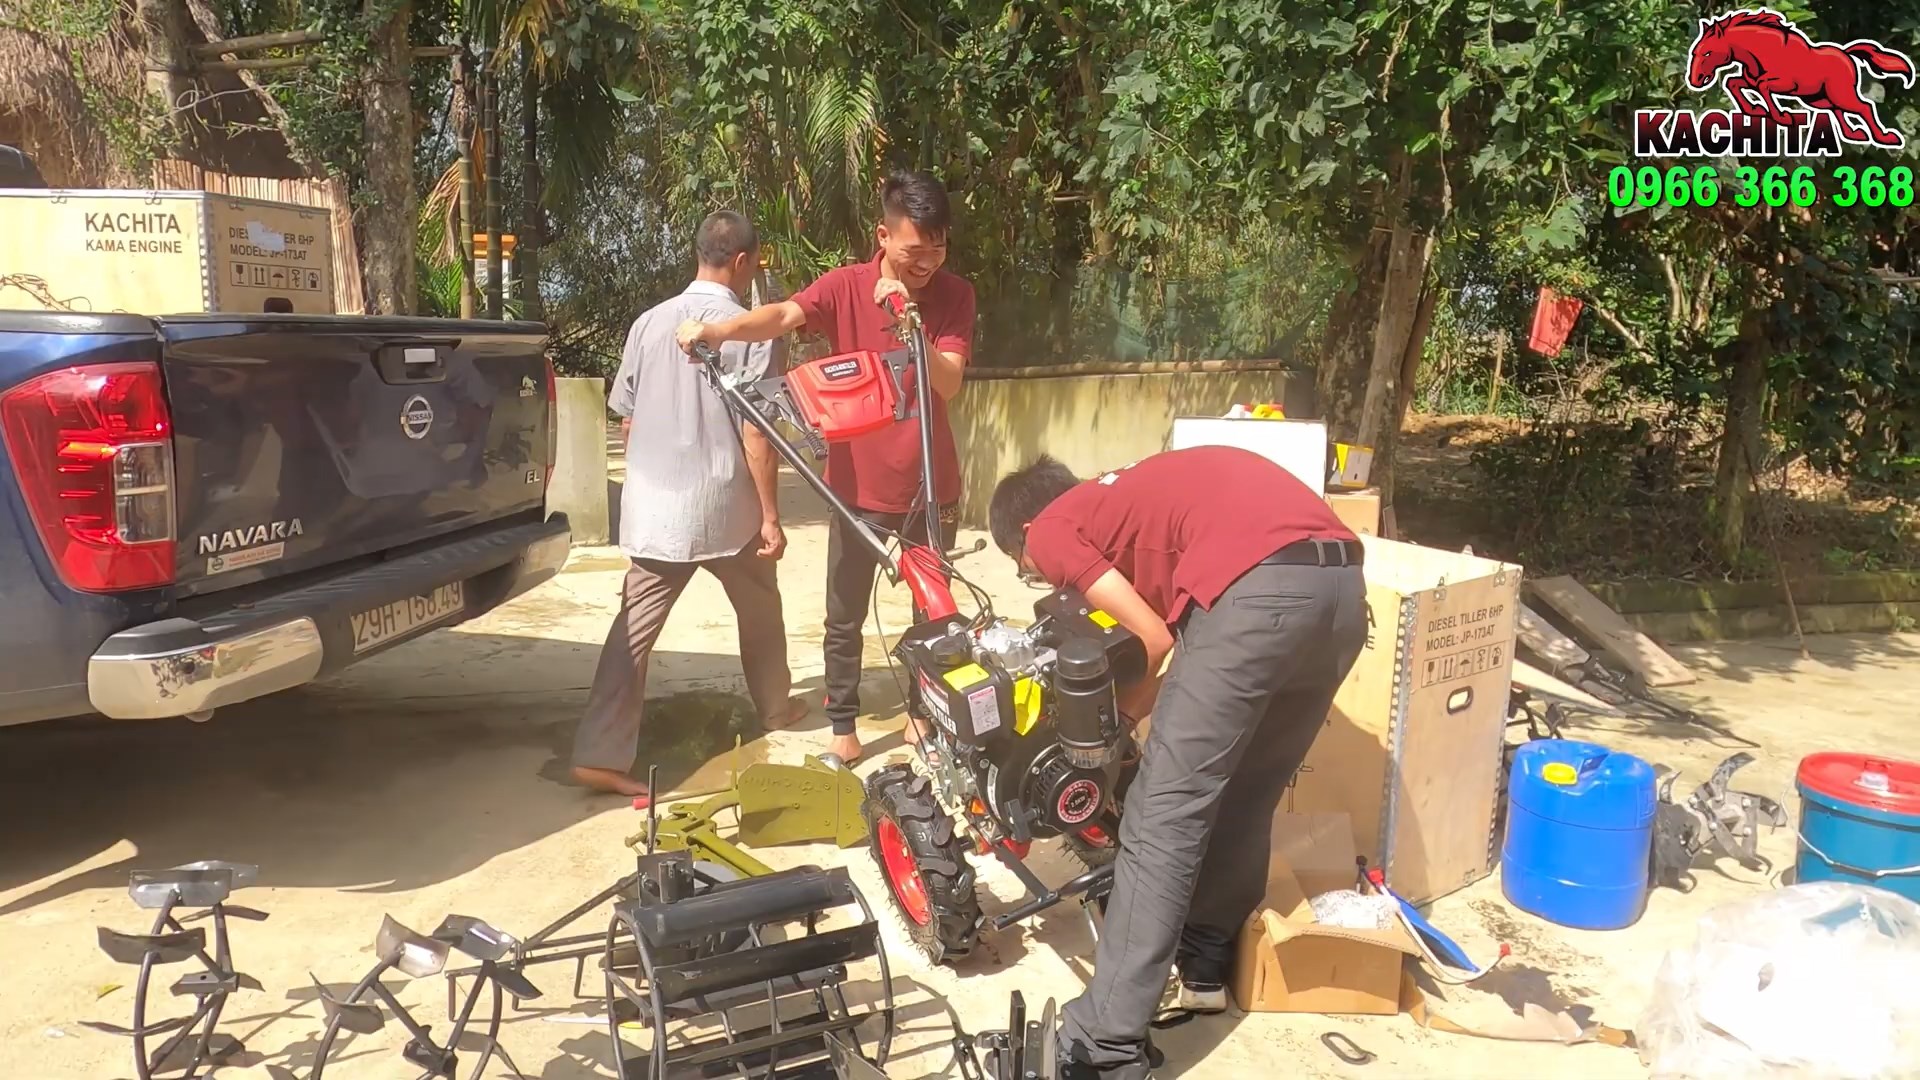 Hướng dẫn lắp đặt máy xới đất Kachita 173AT đề nổ cho bác Sơn tại Thanh Xuân, Thanh Chương, Nghệ An